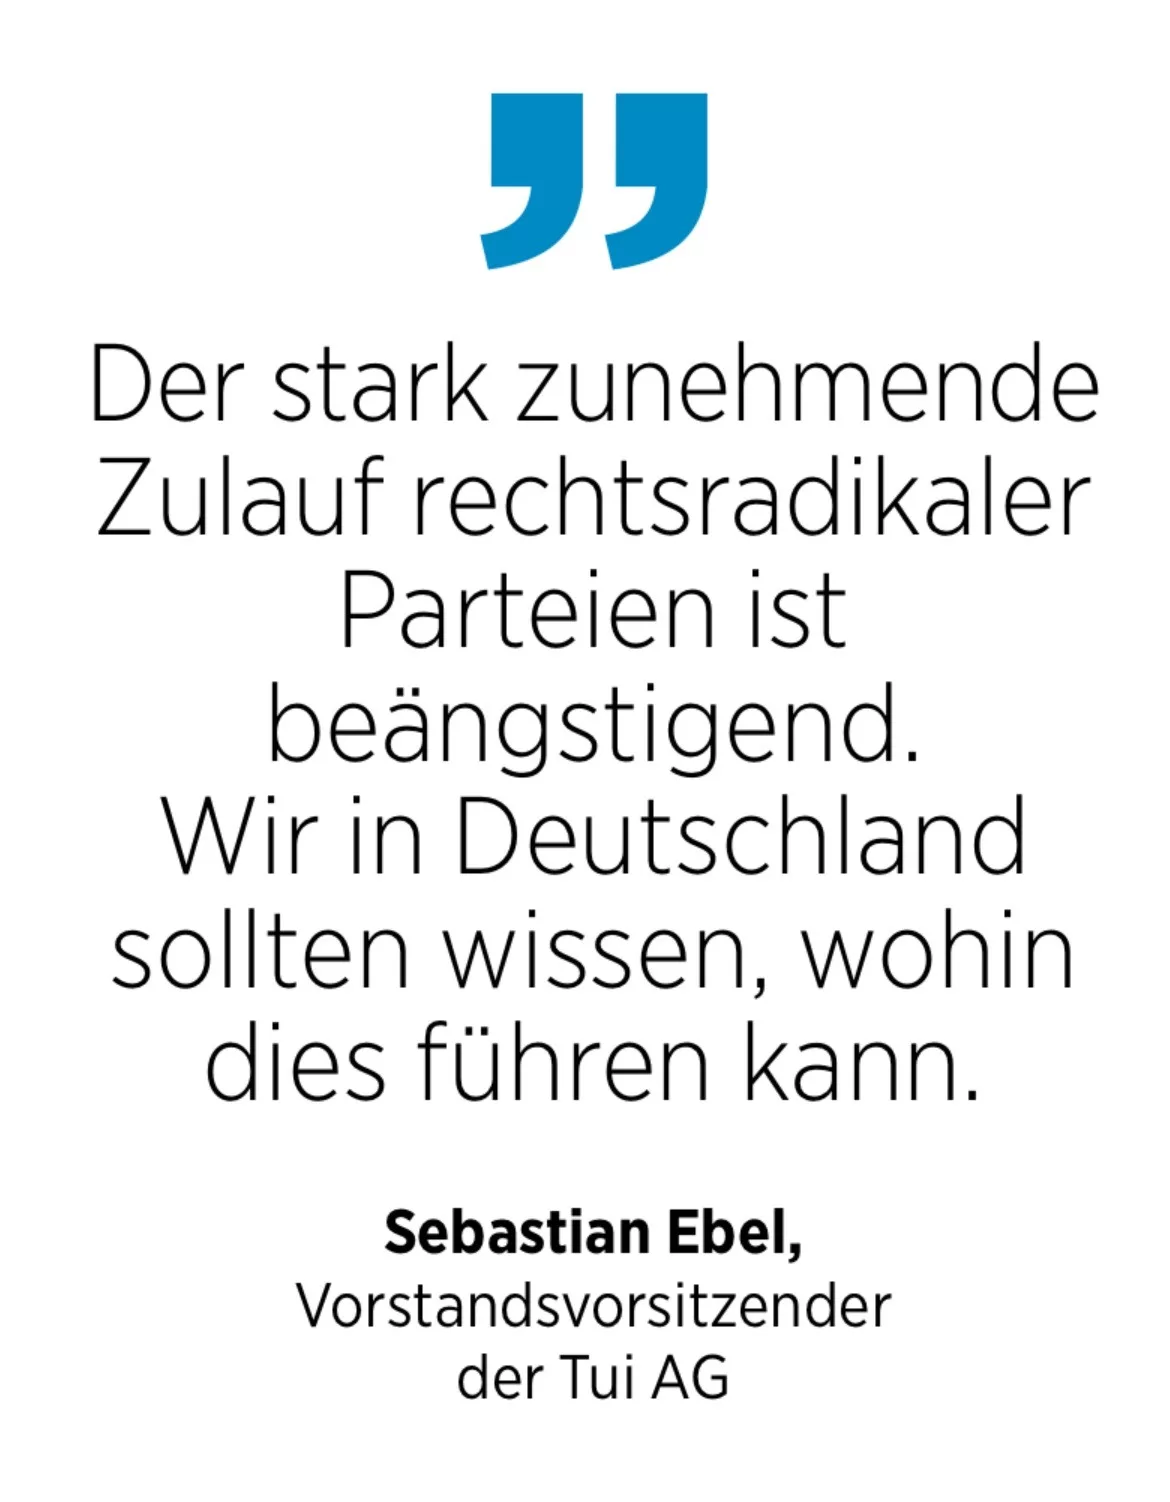 Sebastian Ebel, Vorstandsvorsitzender der Tui AG; Der stark zunehmende Zulauf rechtsradikaler Parteien ist beängstigend. Wir in Deutschland sollten wissen, wohin dies führen kann.